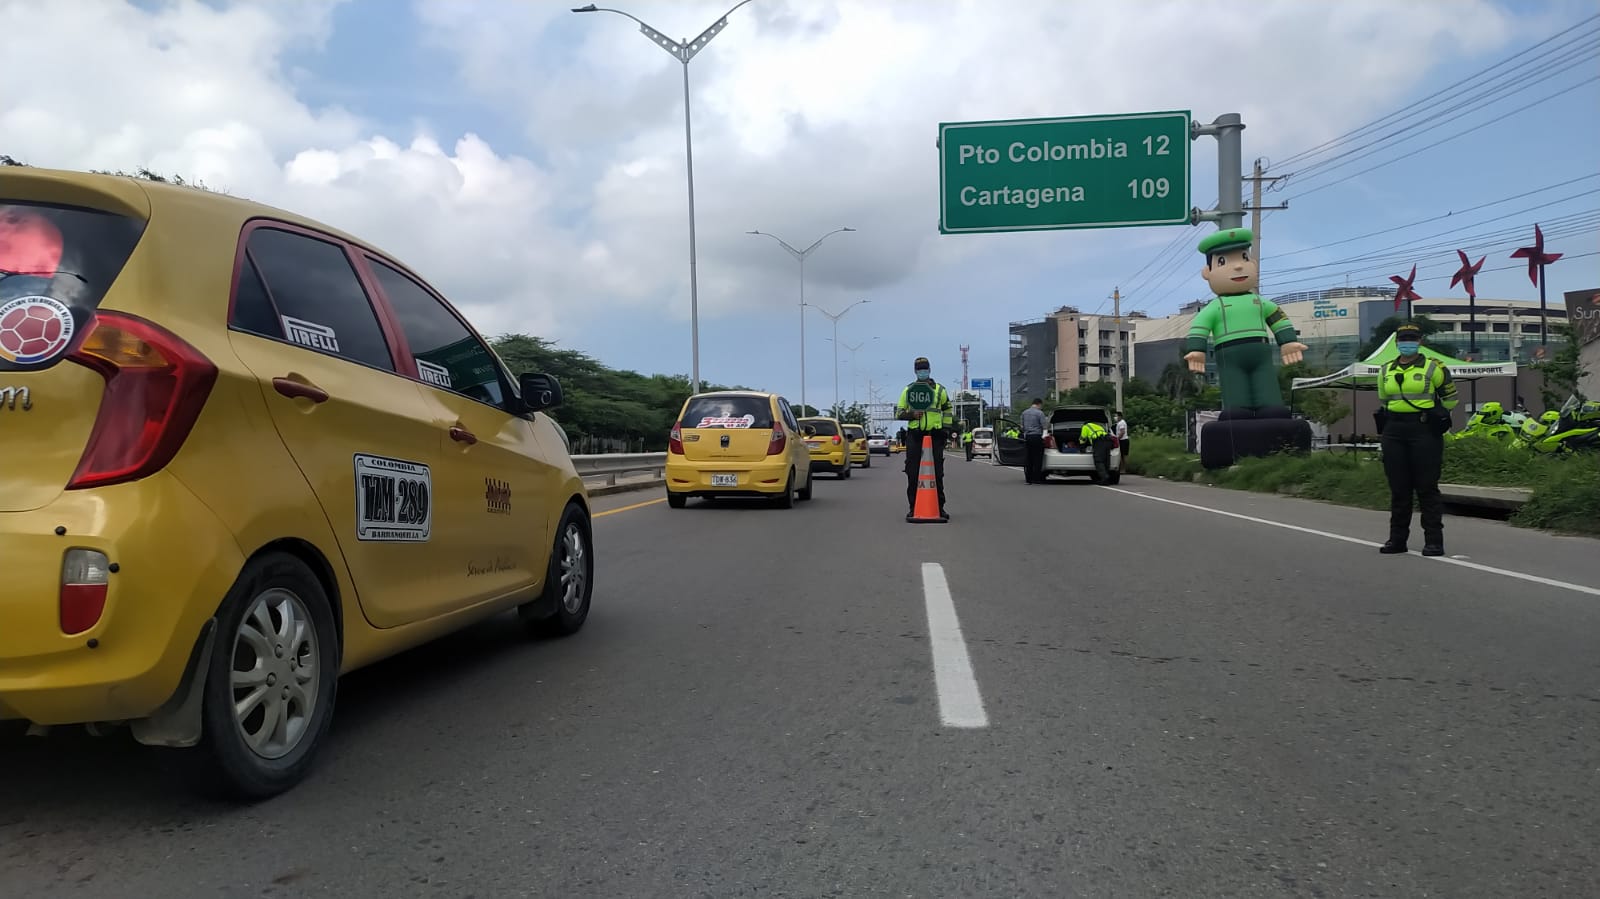 En este fin de semana puente festivo “Día de la Raza” la Seccional de Tránsito y Transporte de la Policía Metropolitana de Barranquilla, dispuso toda su capacidad operativa en diferentes puestos de prevención vial y de control sobre los principales corredores viales de Barranquilla.